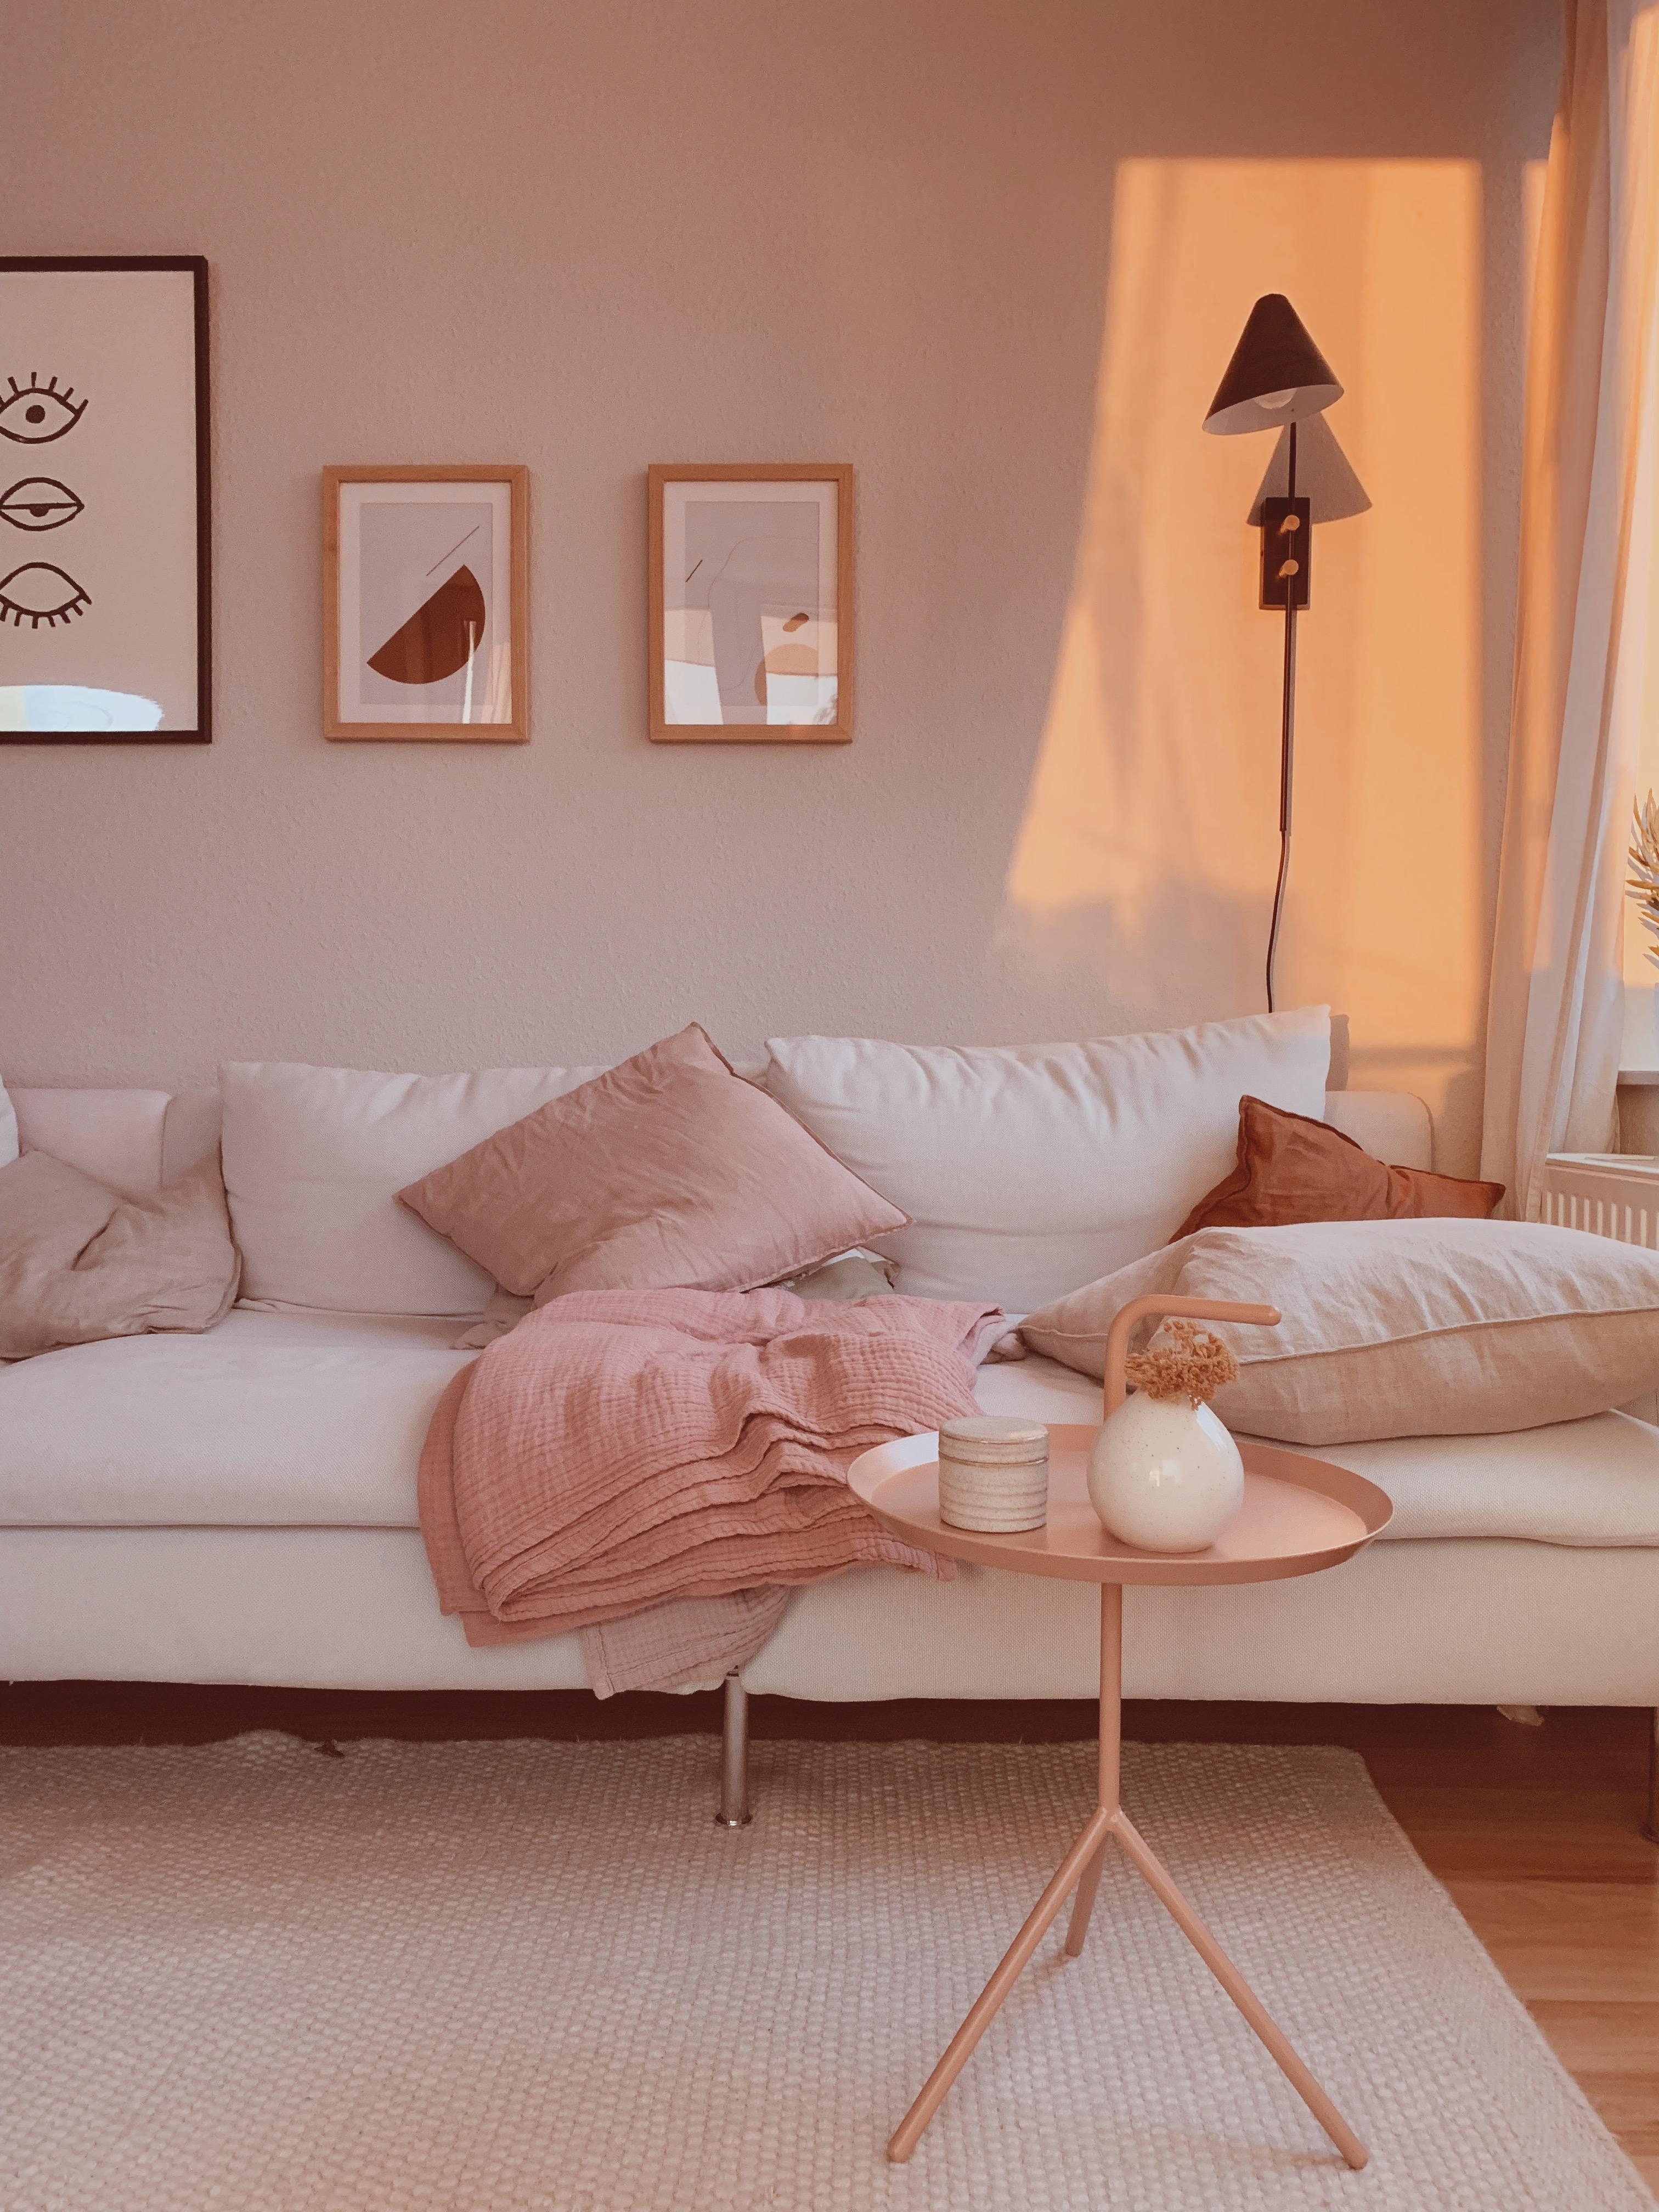 #livingroom #livingroominspo #goldenhour